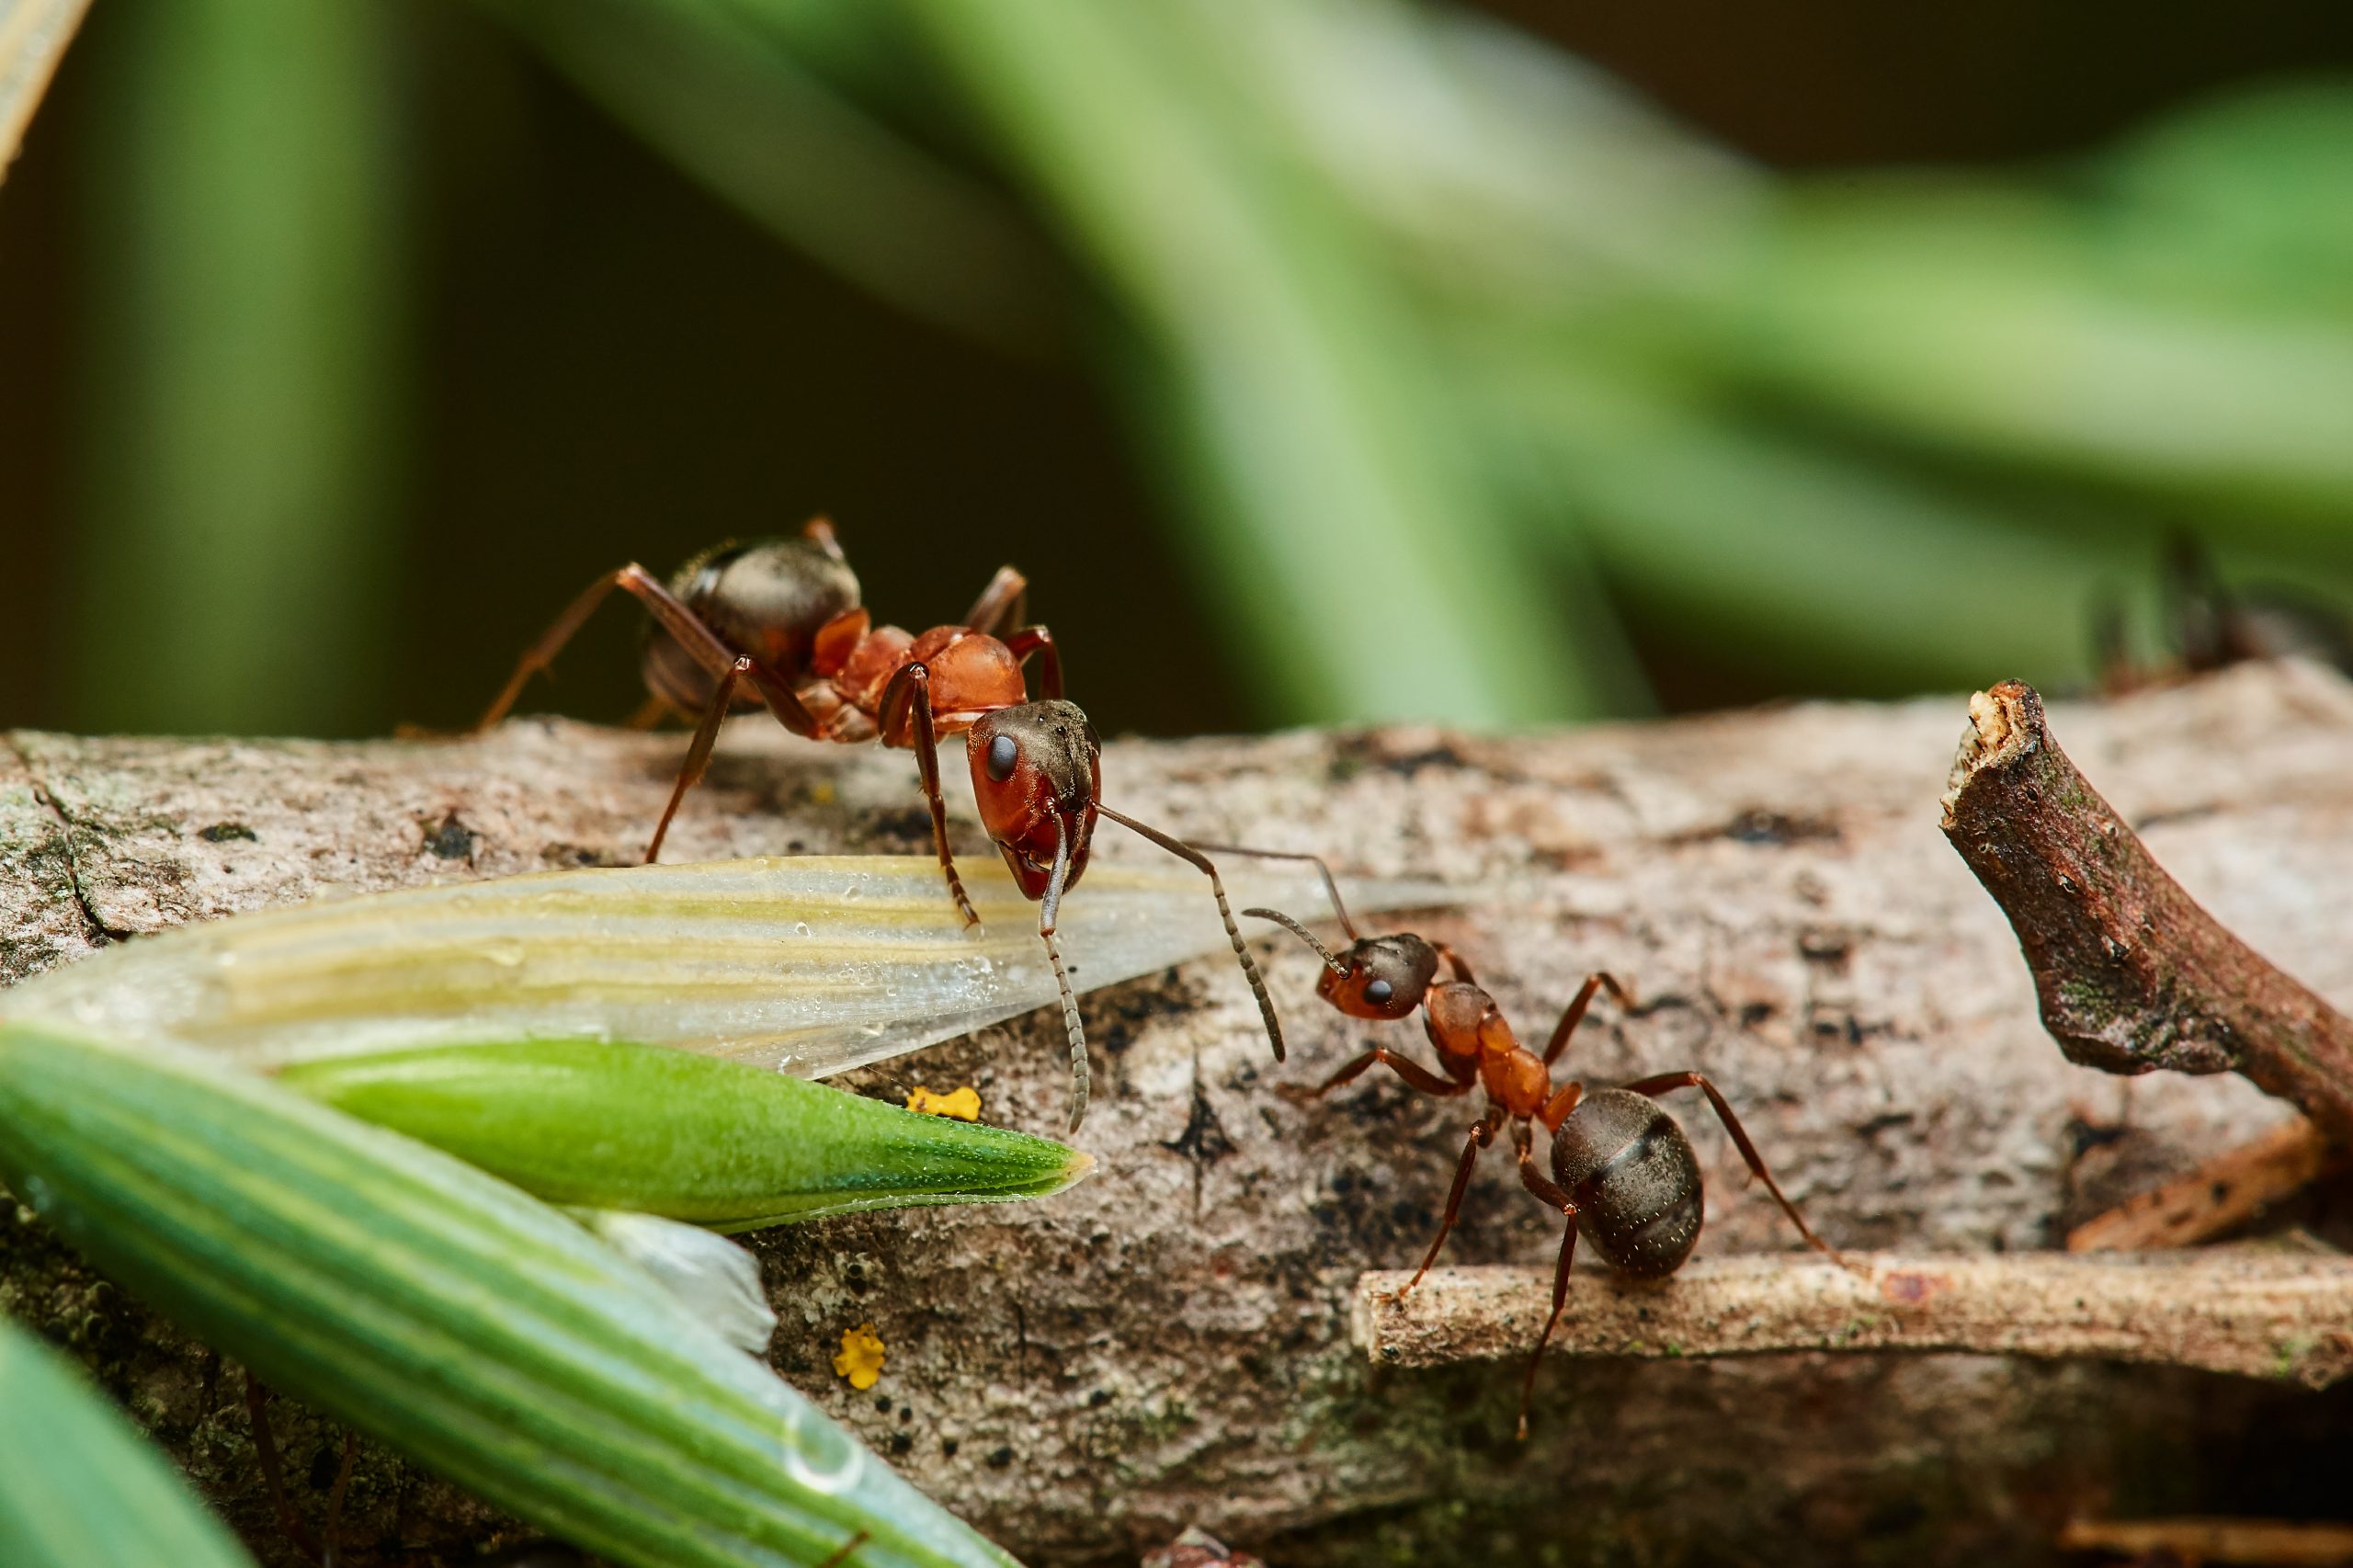 faq - Does Birch Fumigators offer carpenter ant pest control in Spruce Grove?